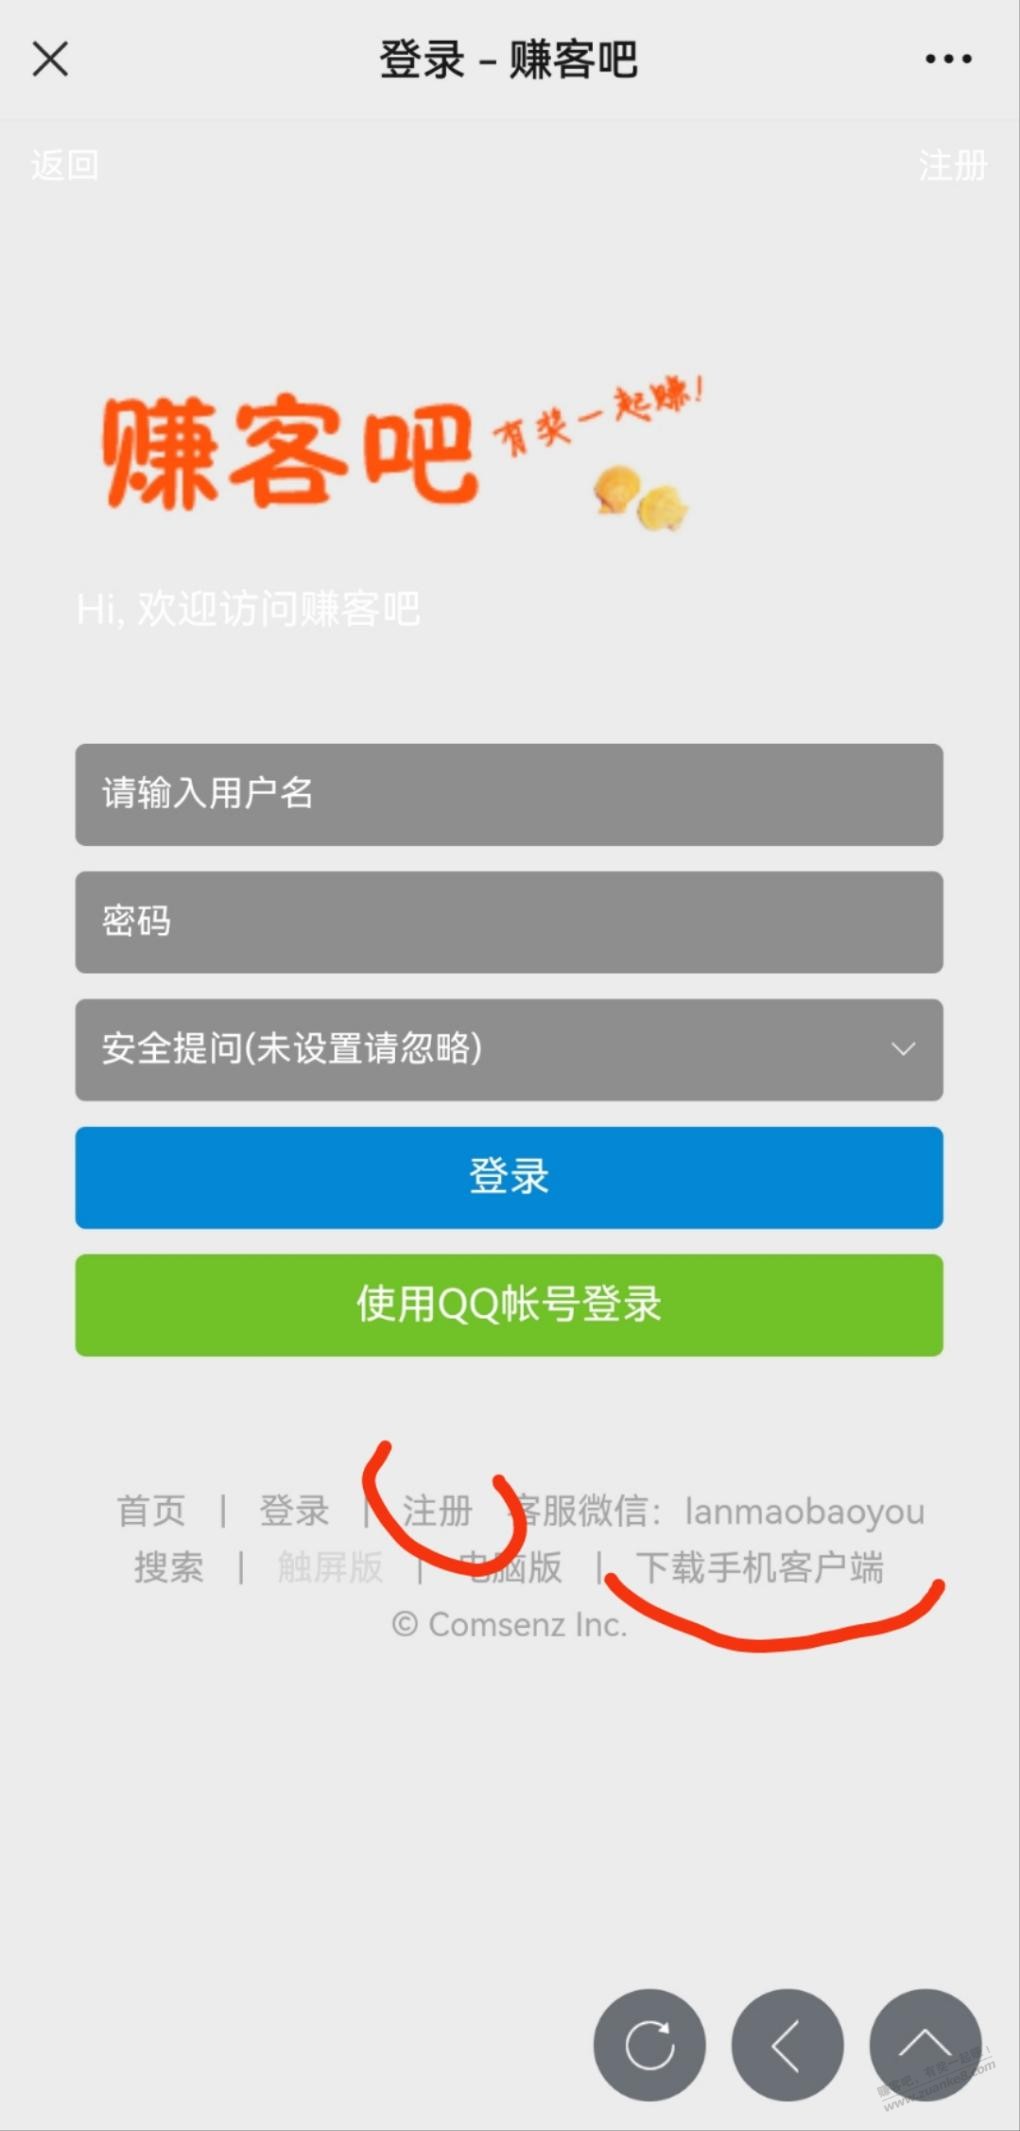 0818团app下载地址-惠小助(52huixz.com)